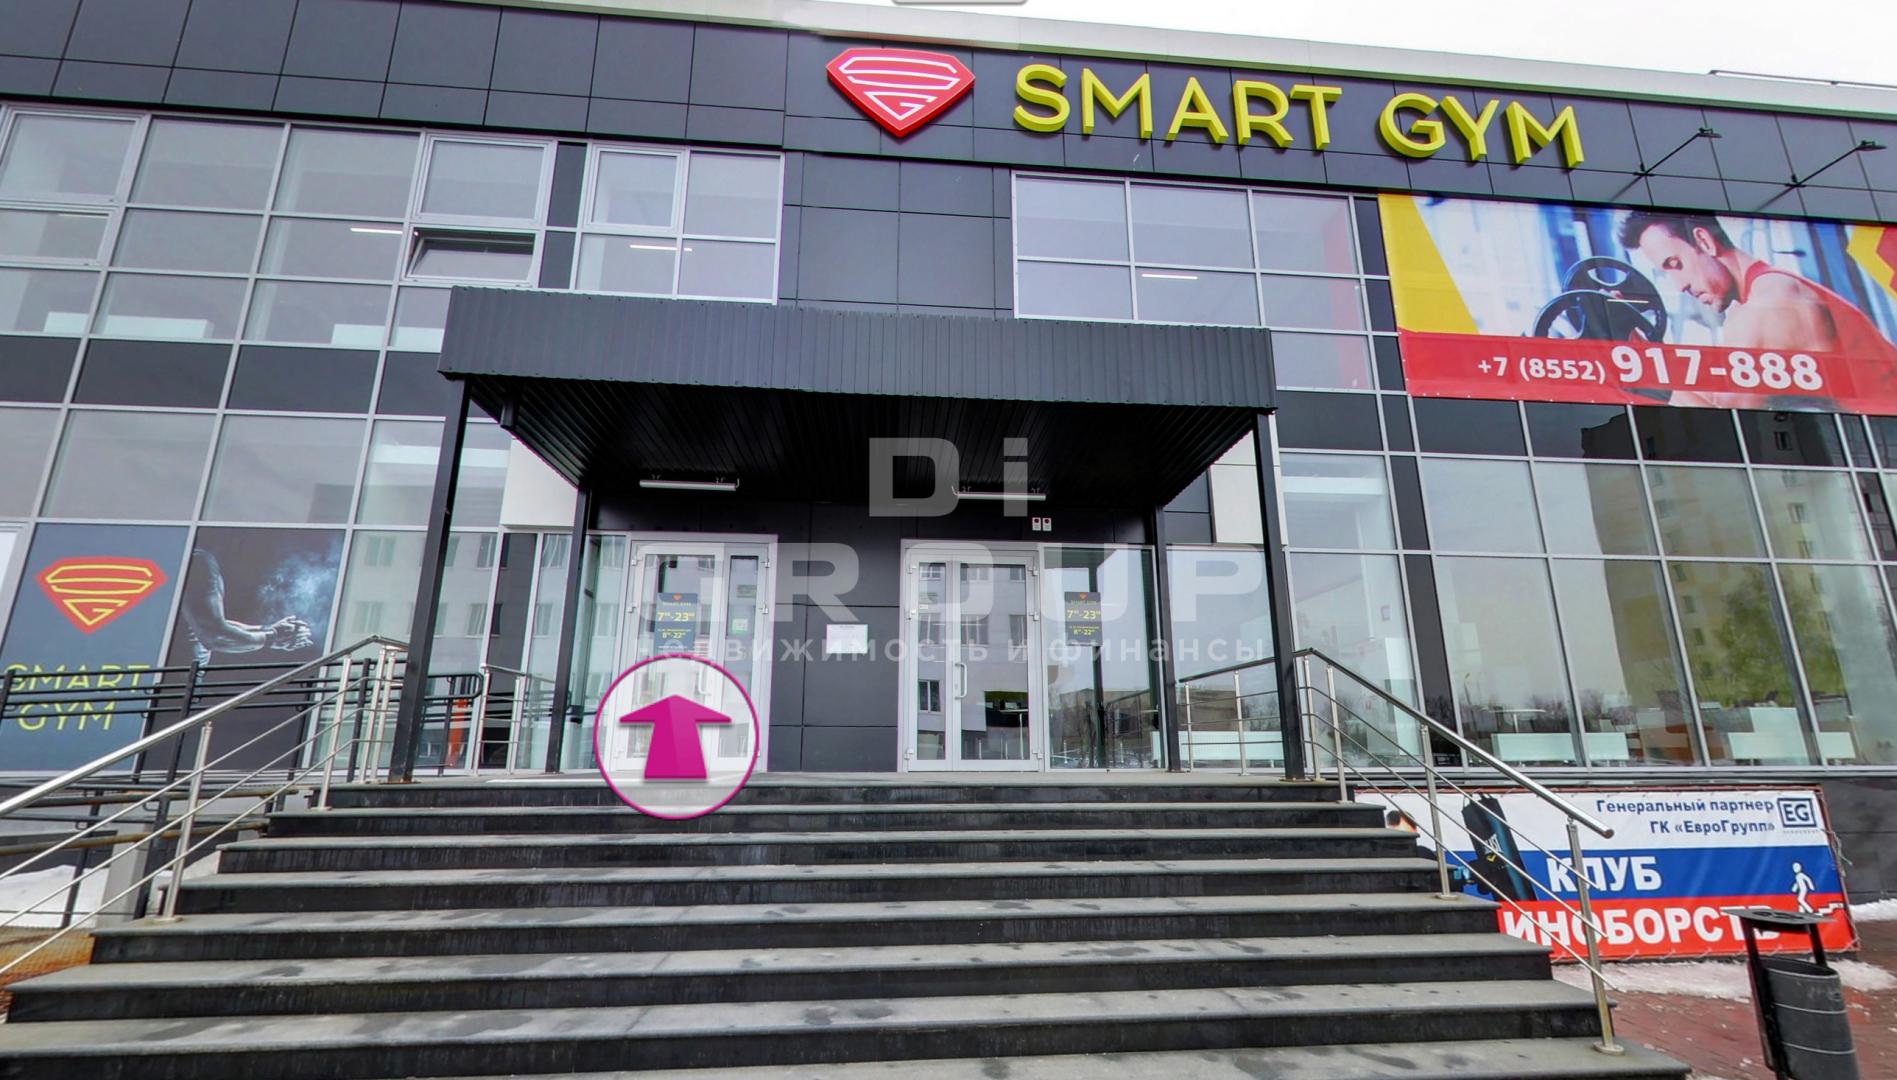 Предлагаем готовый бизнес — Фитнес-клуб «SMART GYM» в г. Набережные Челны.   Месторасположение: в центральной части...